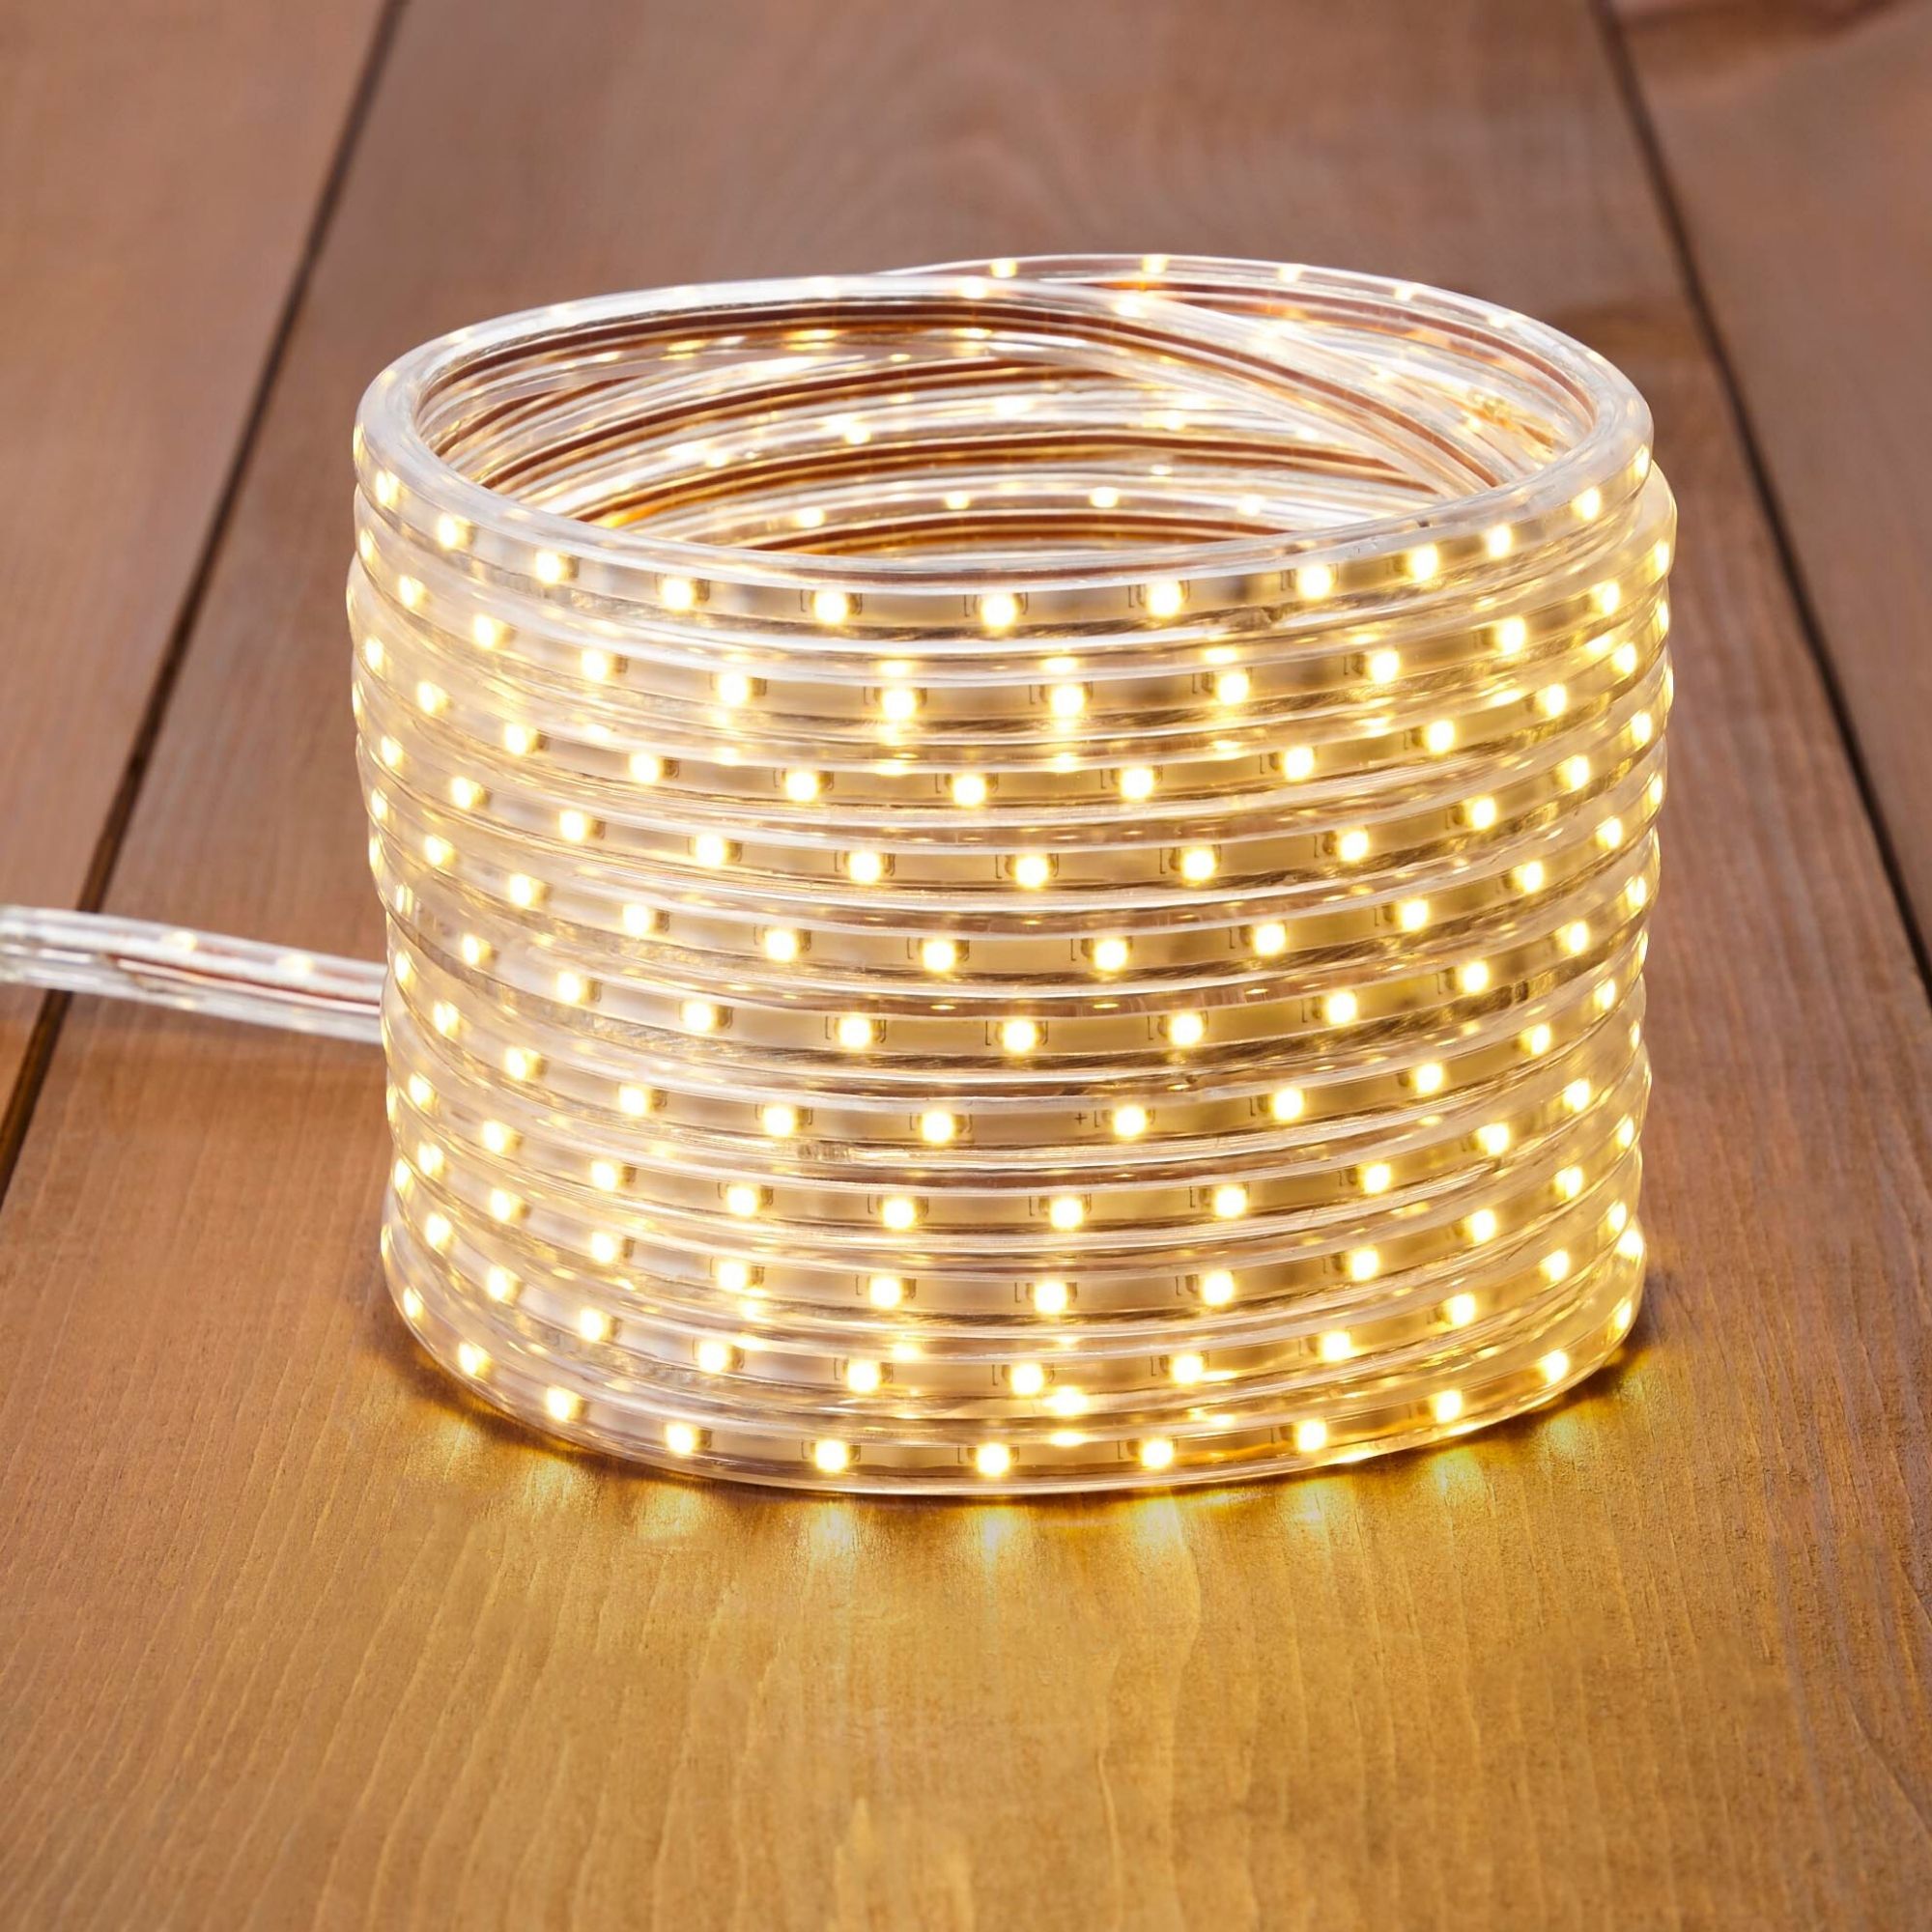 Flexible LED Rope Light - 23-Ft - Warm White